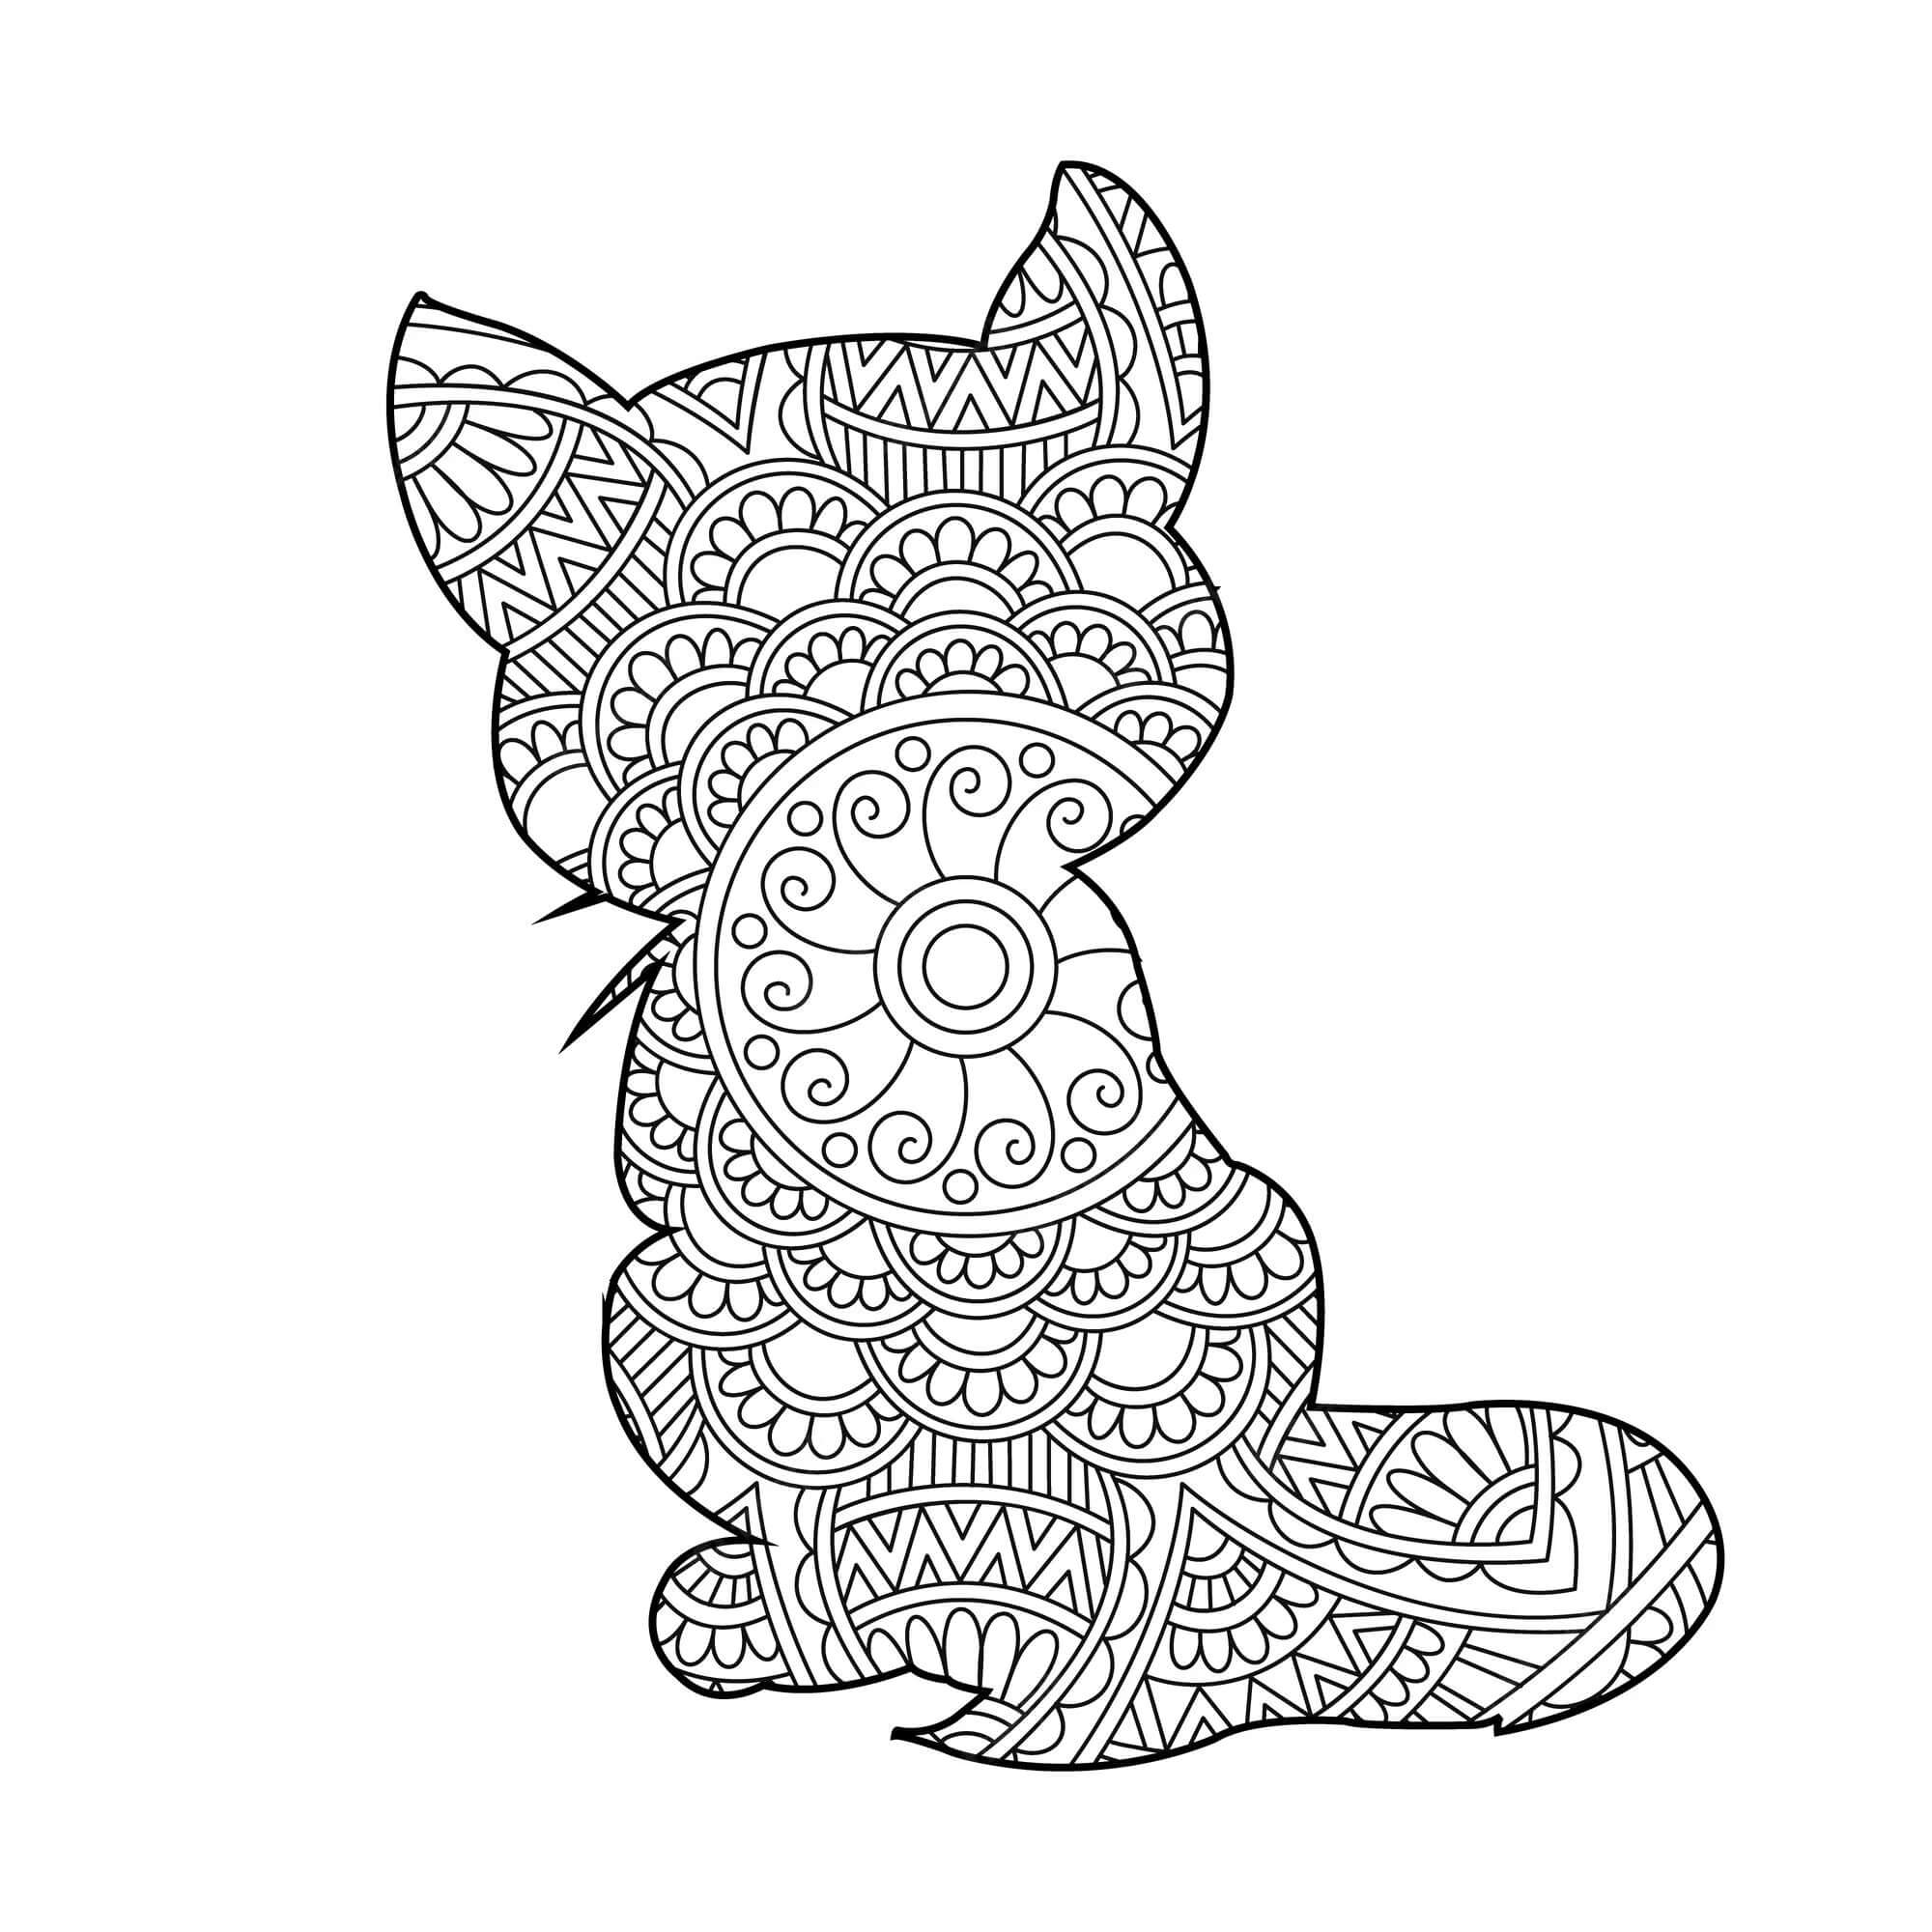 Mandala Cat Coloring Page – Sheet 15 Mandalas